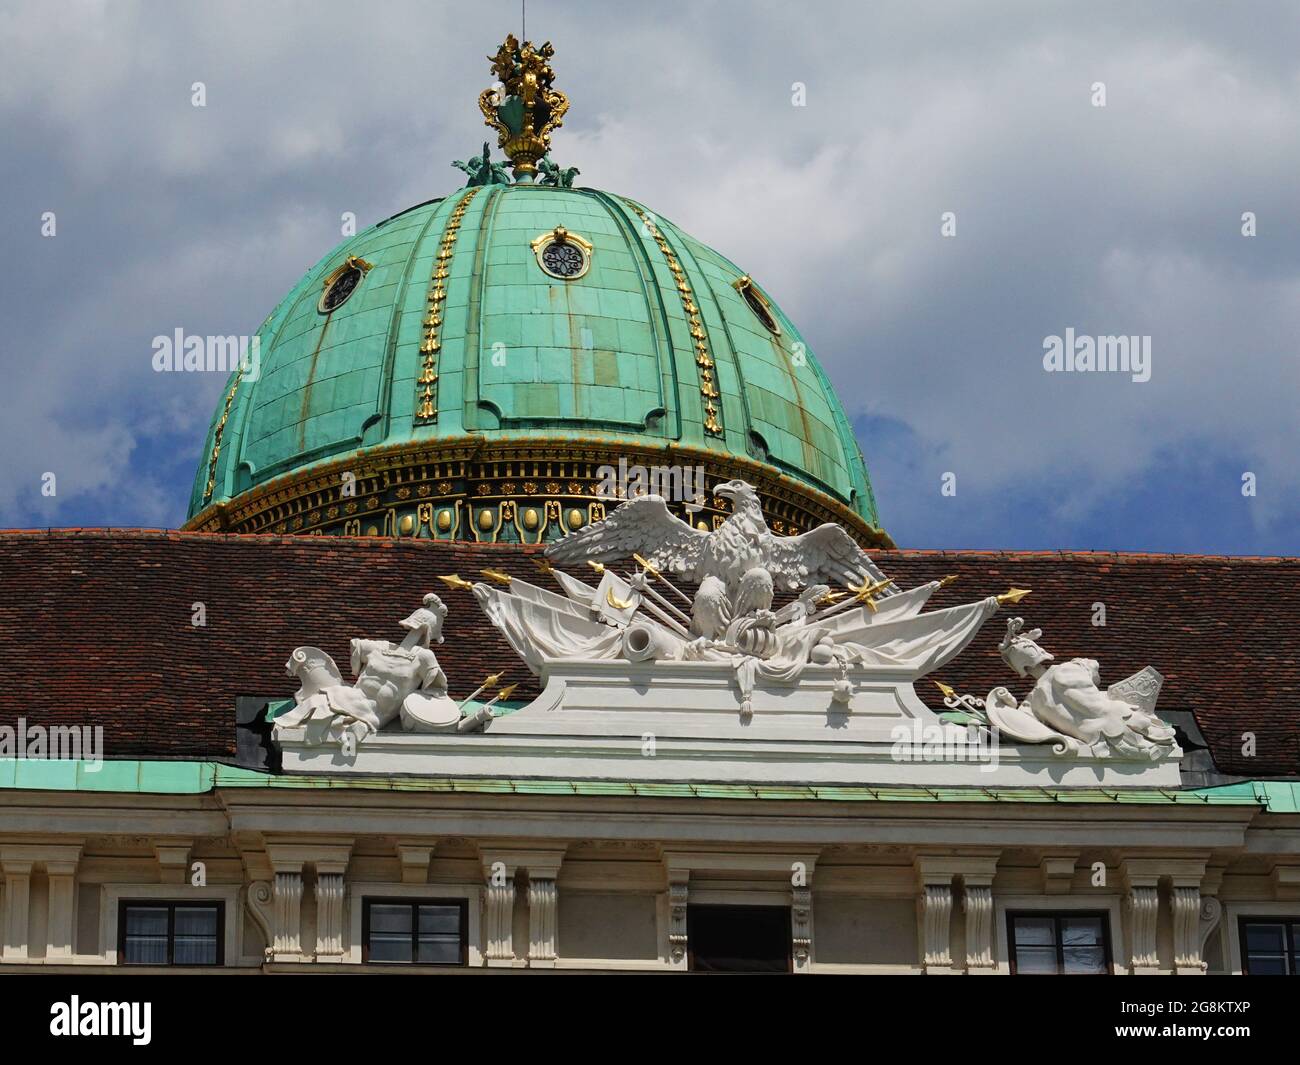 Architektur in Wien, die Wiener Hofburg ist einer der größten Palastkomplexe der Welt Stockfoto